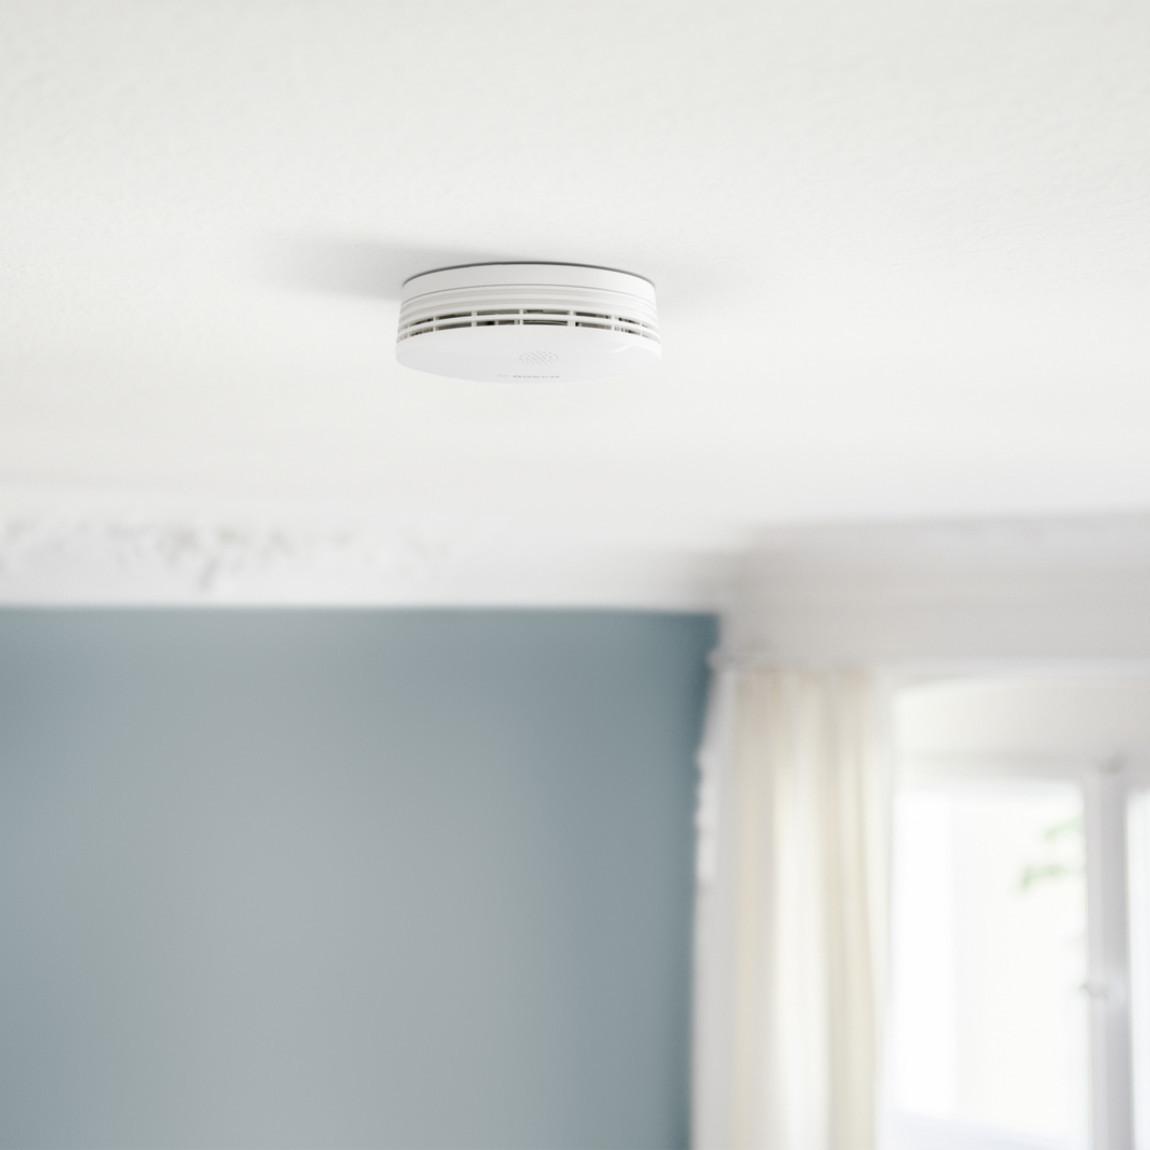 Bosch Smart Home - Starter Set Sicherheit_Rauchwarnmelder an Decke